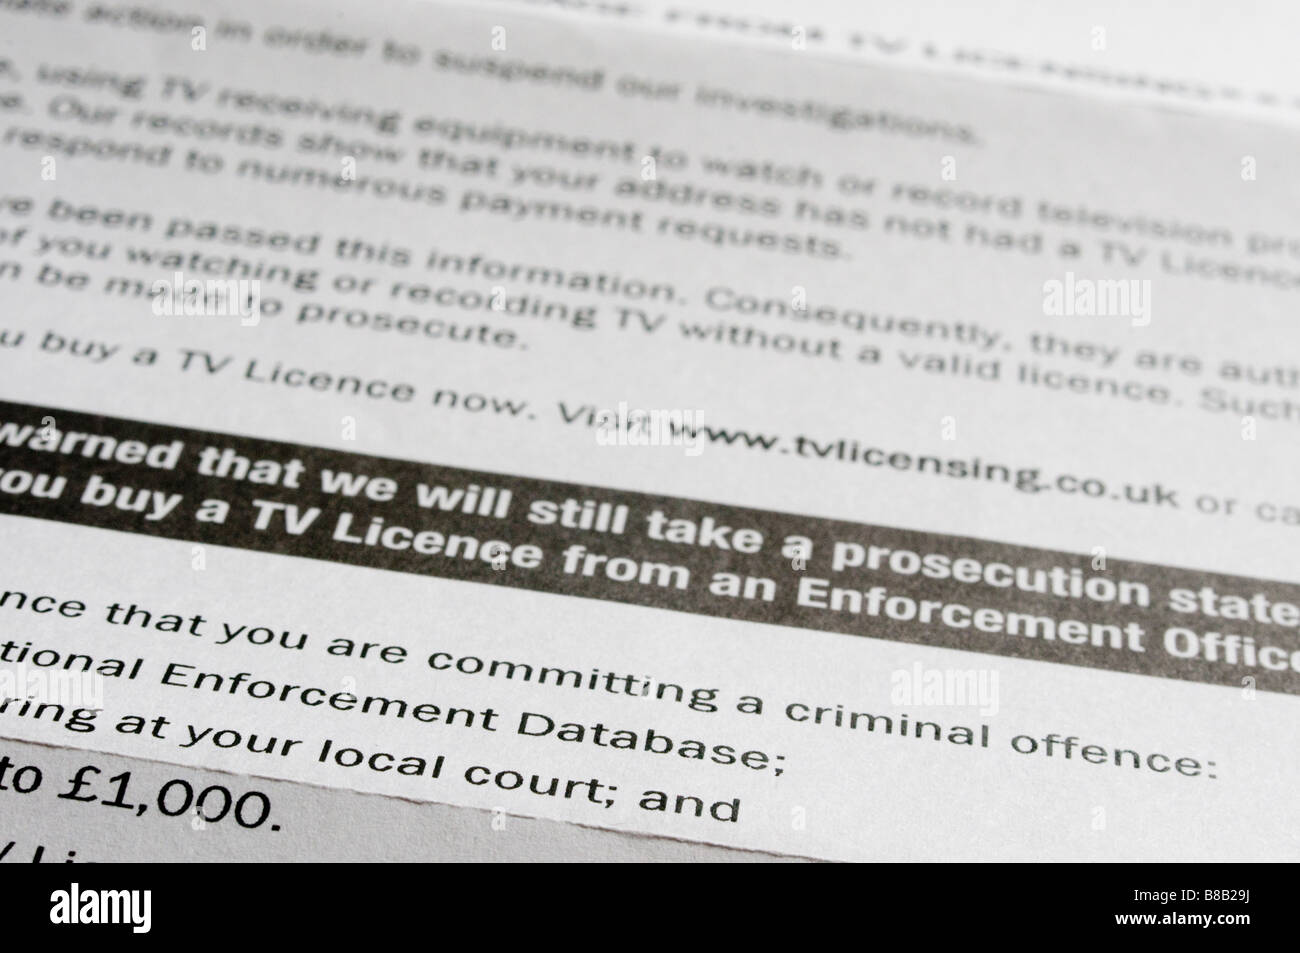 Carta de advertencia sobre licencias de televisión criminal/procedimientos legales si la licencia no se adquirió. Foto de stock